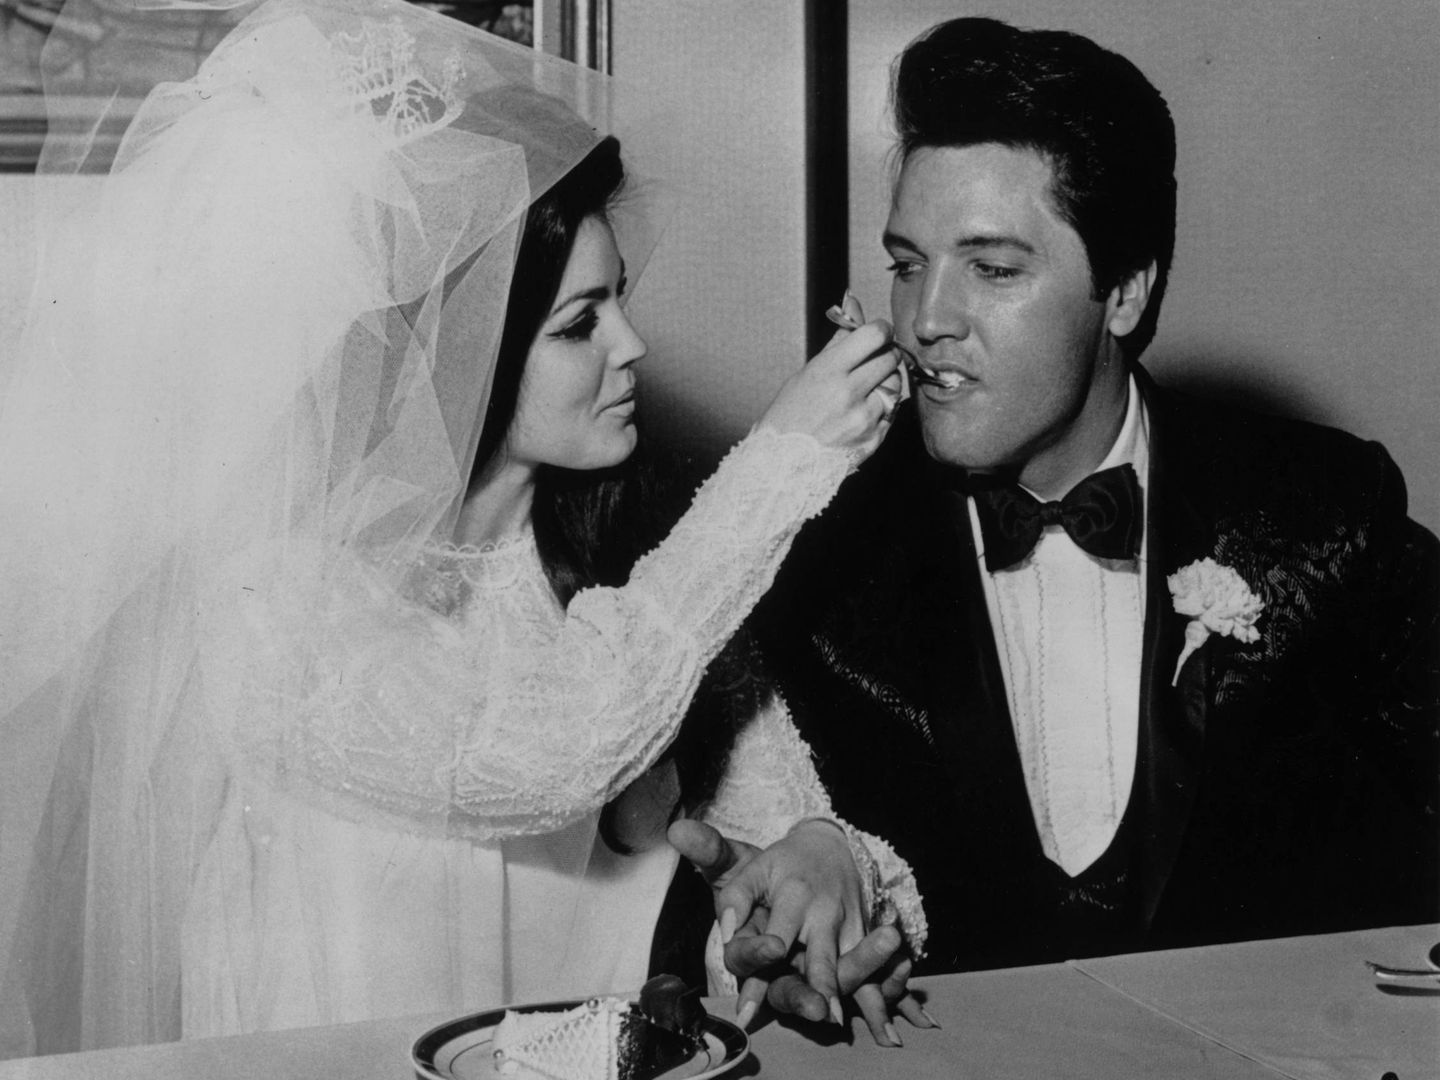  La boda de Elvis y Priscilla Presley en Las Vegas. (Getty)